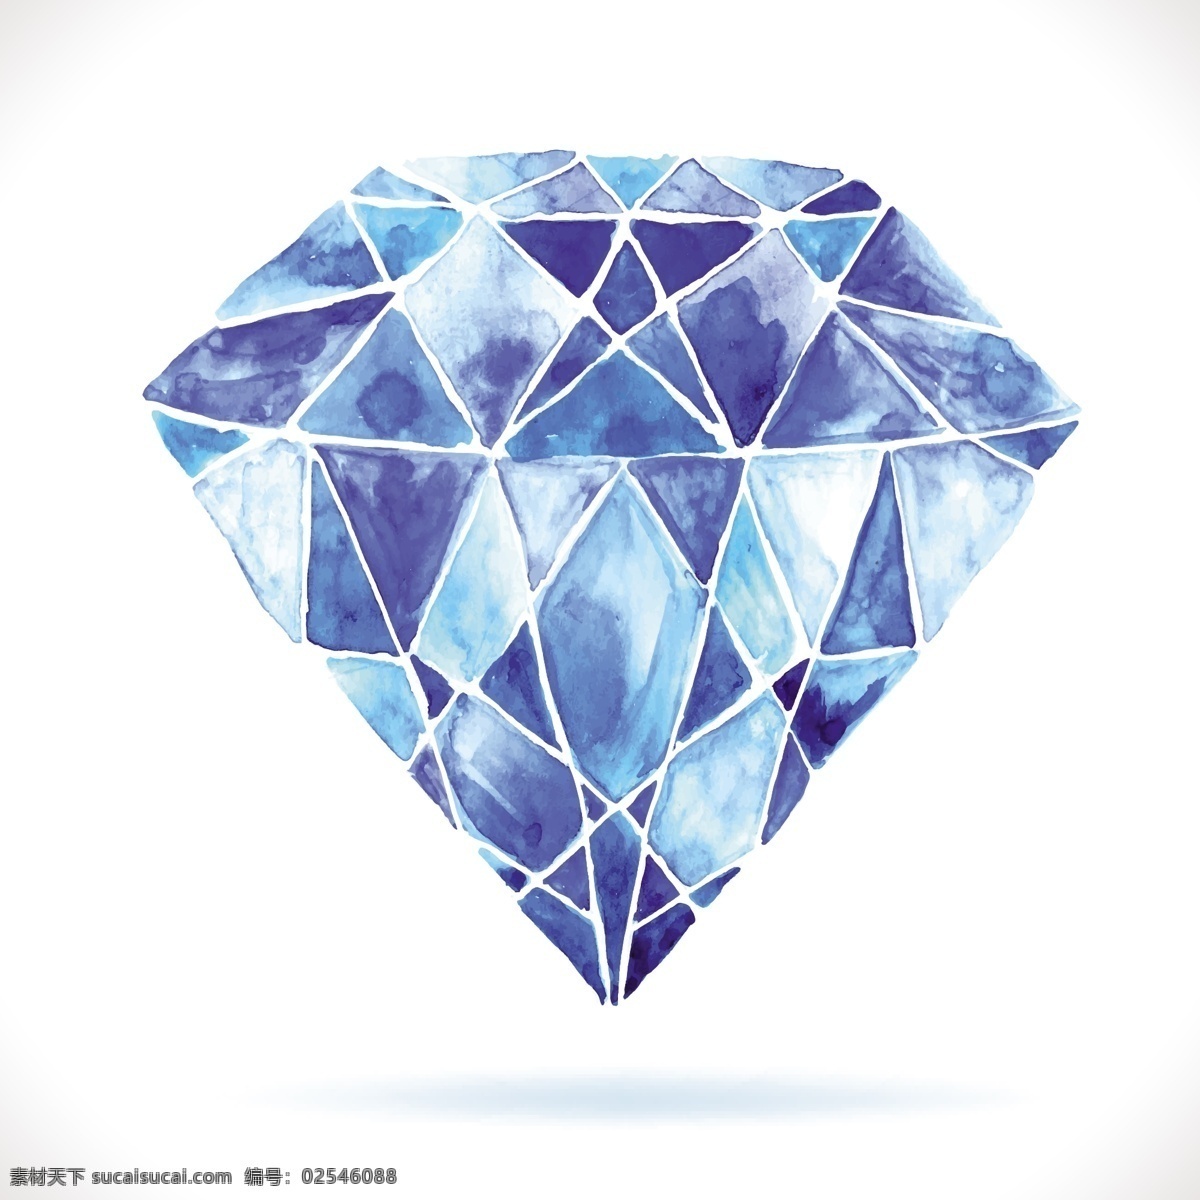 唯美水晶钻石 彩钻 礼物 埃菲尔铁塔 钻石 珠宝 高贵璀灿 玻璃 水晶 晶莹剔透通透 明亮 梦幻唯美 切割珠宝 水墨珠宝 通透钻石 白色